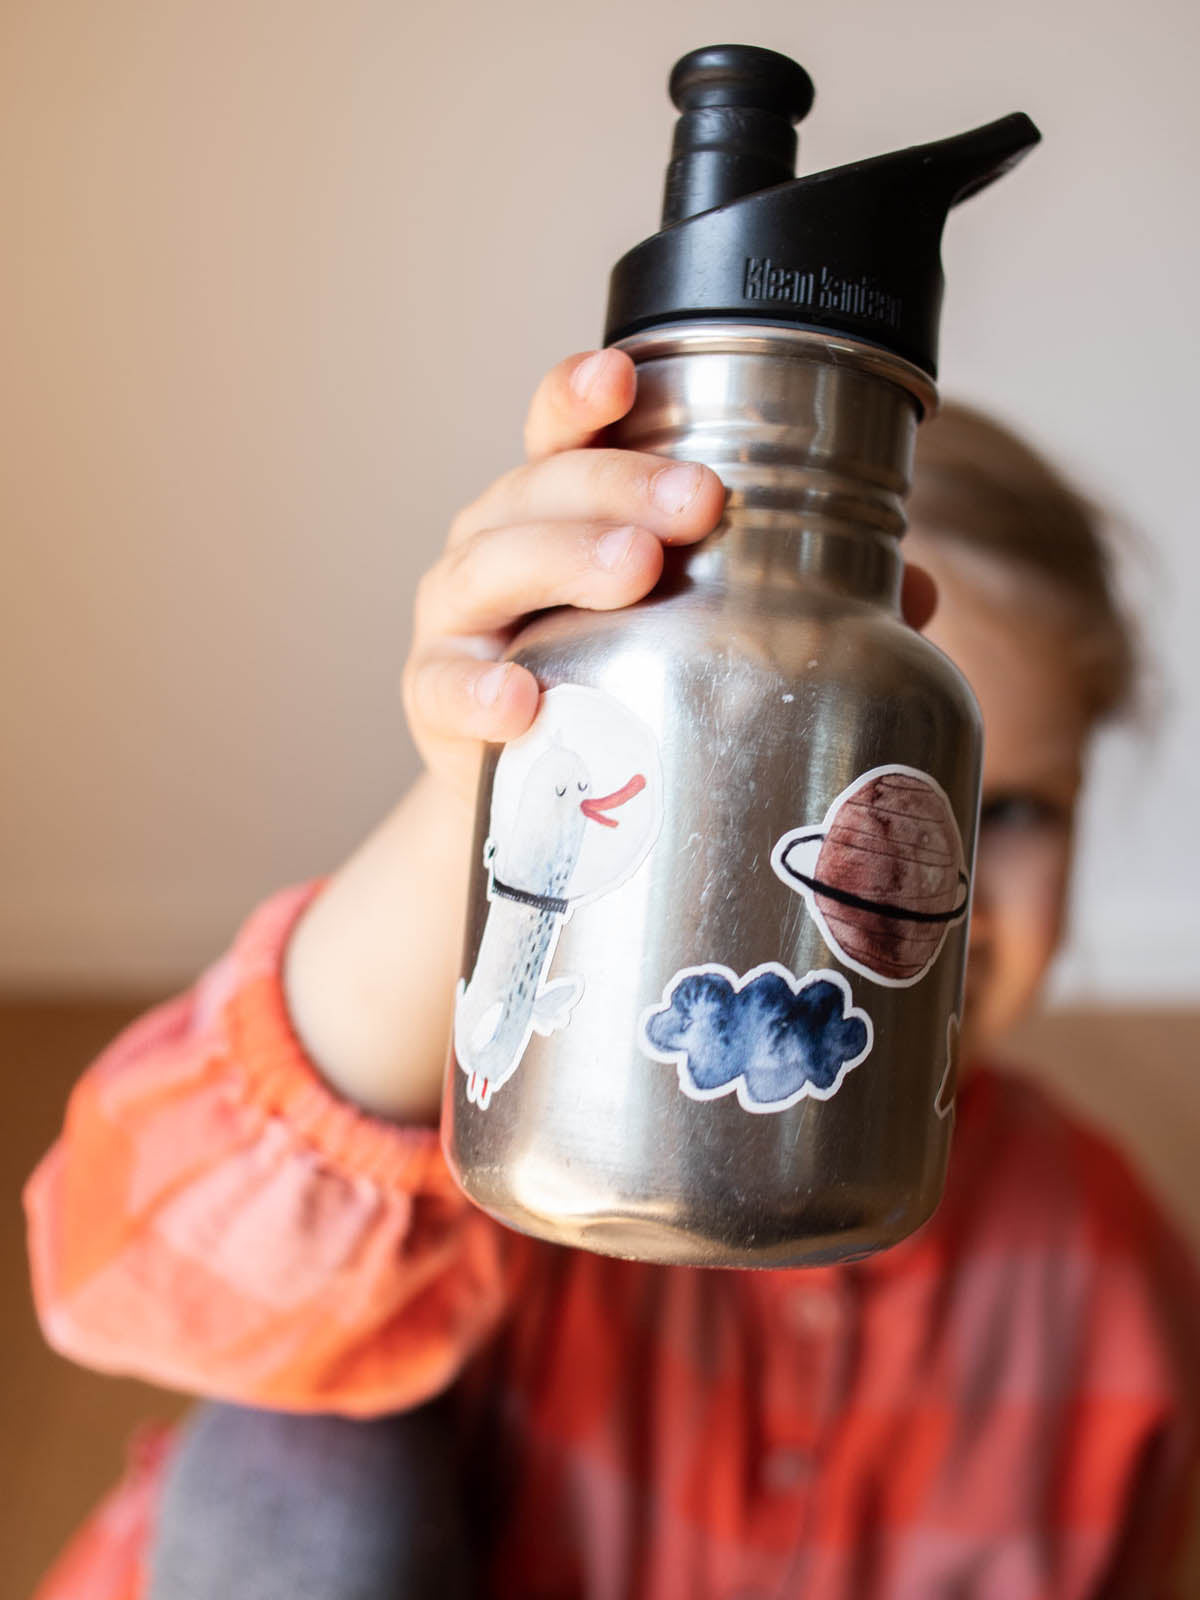 Kind hält eine metallflasche von klean kanteen hoch auf der Spülmaschinenfeste Aufkleber Planet, wolke und gans im weltall kleben